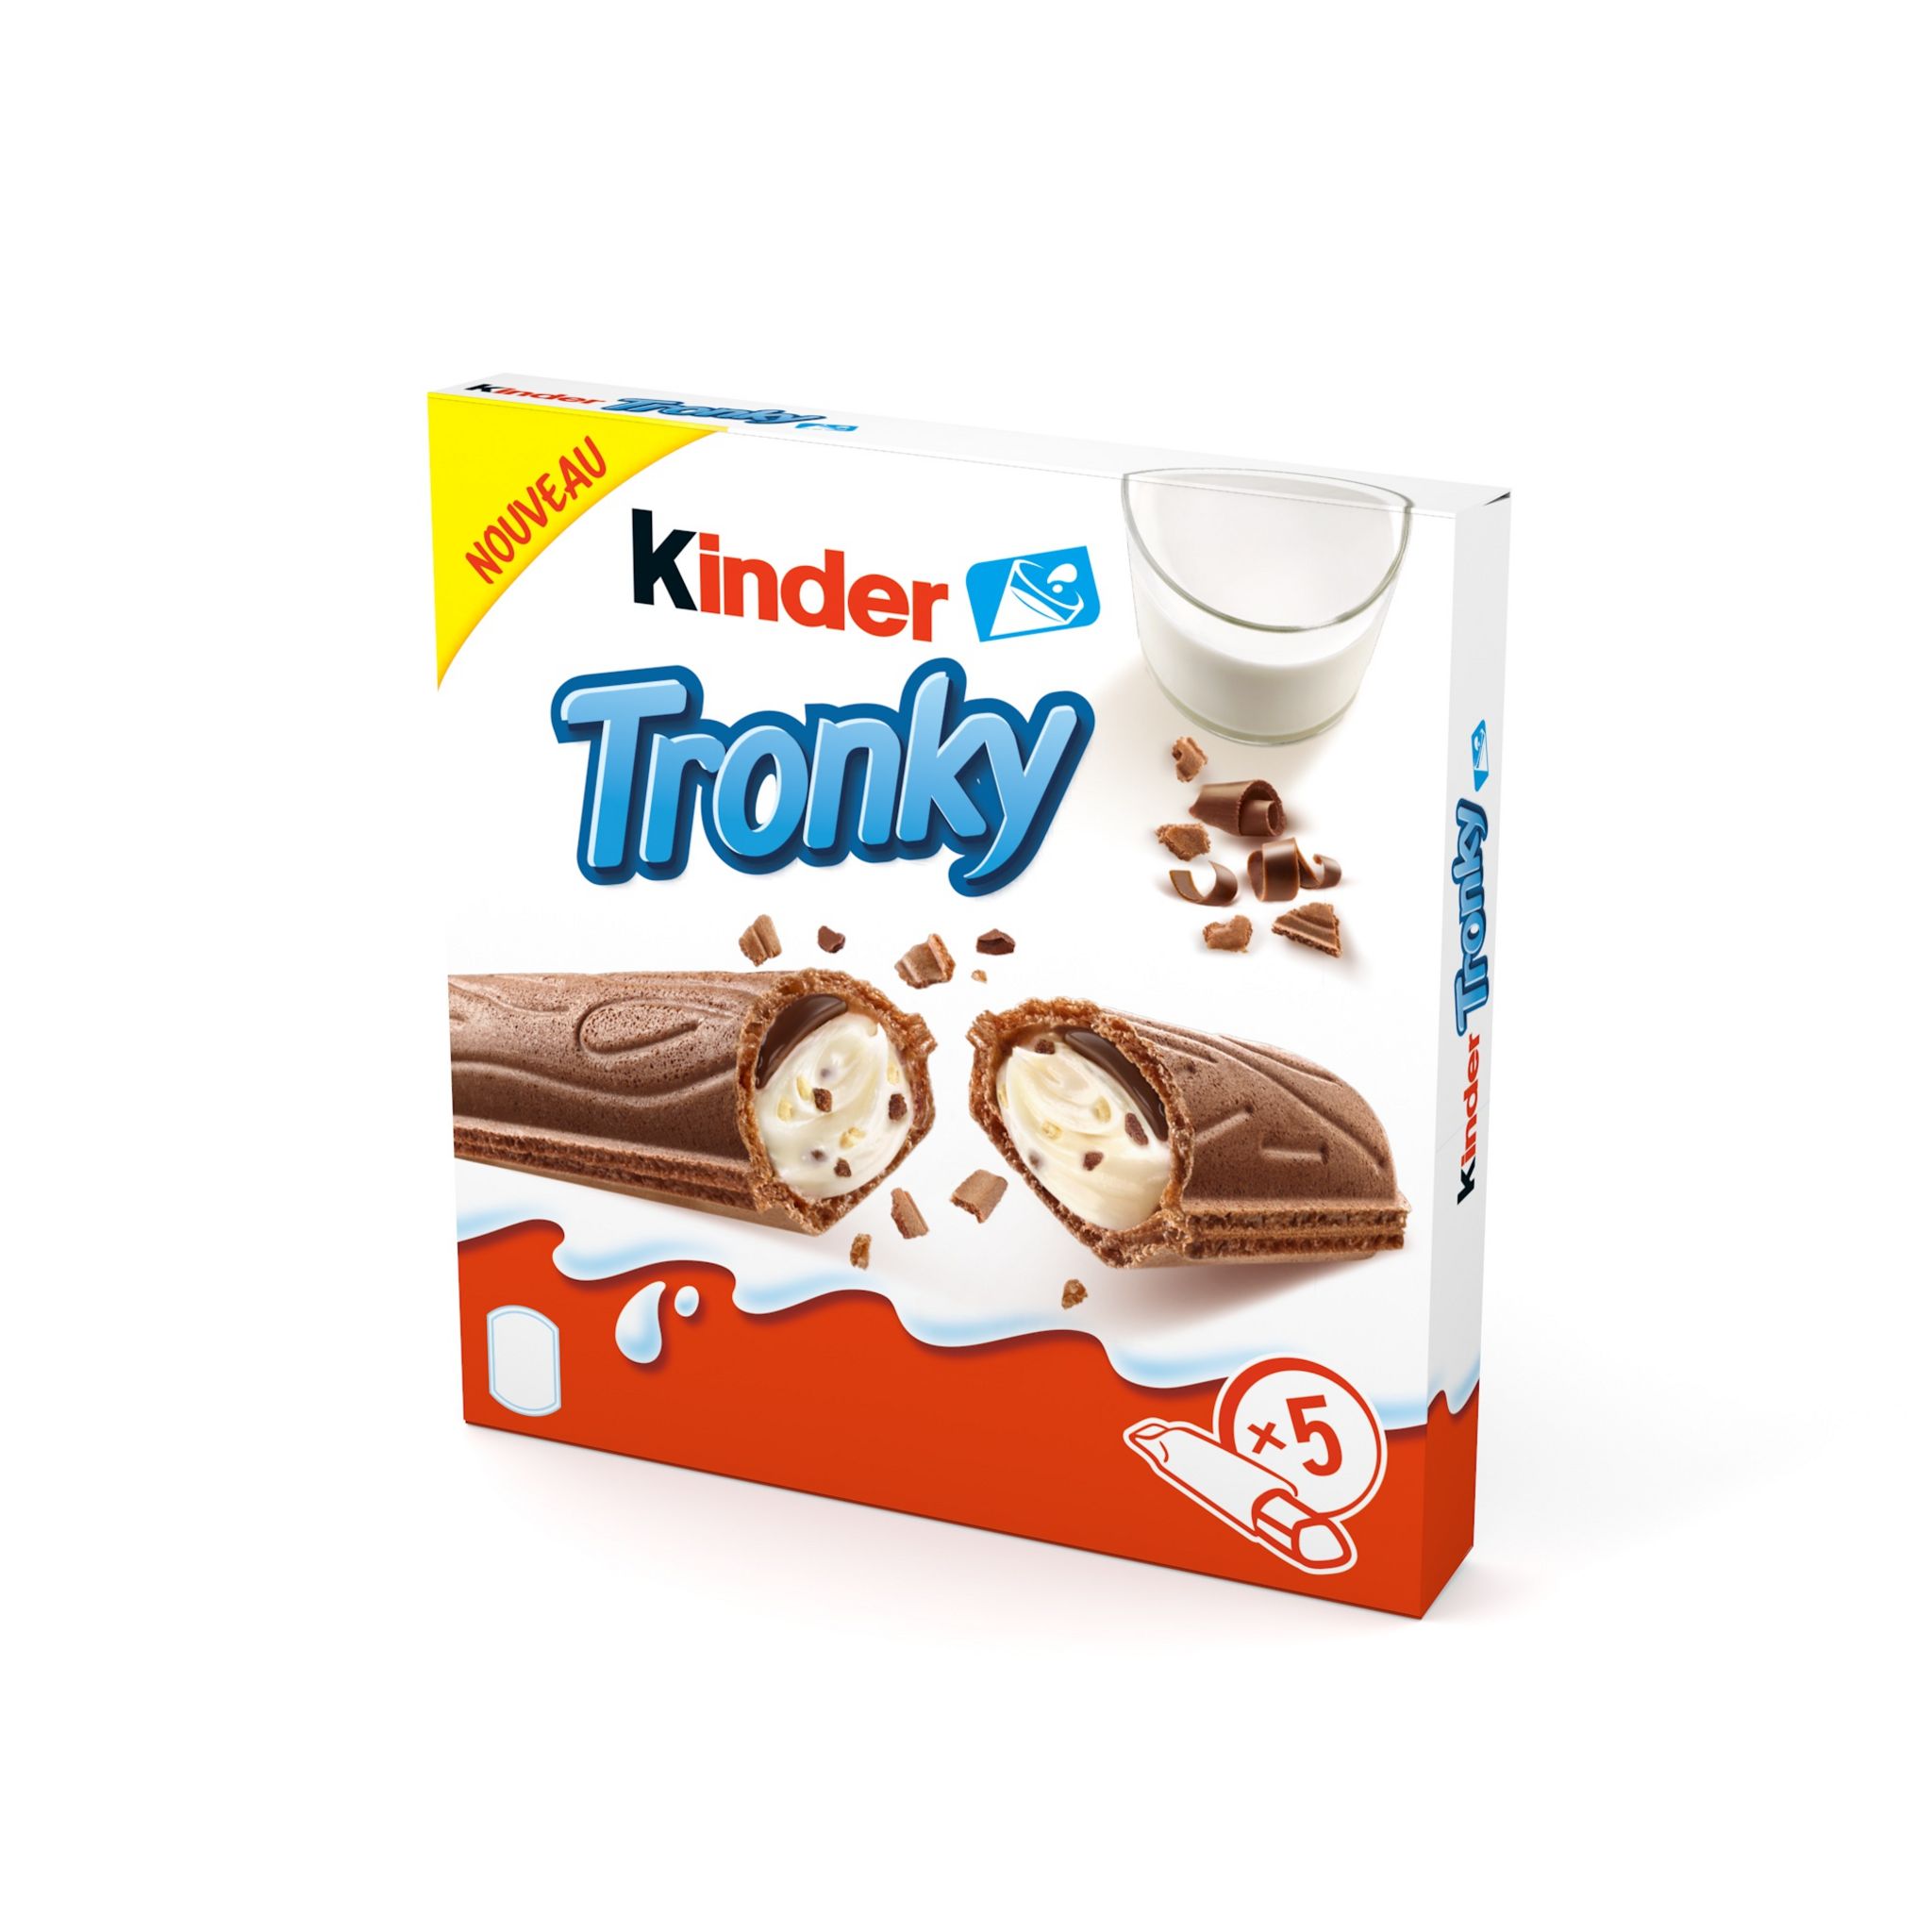 Promo Kinder / ferrero assortiment de chocolats au lait kinder